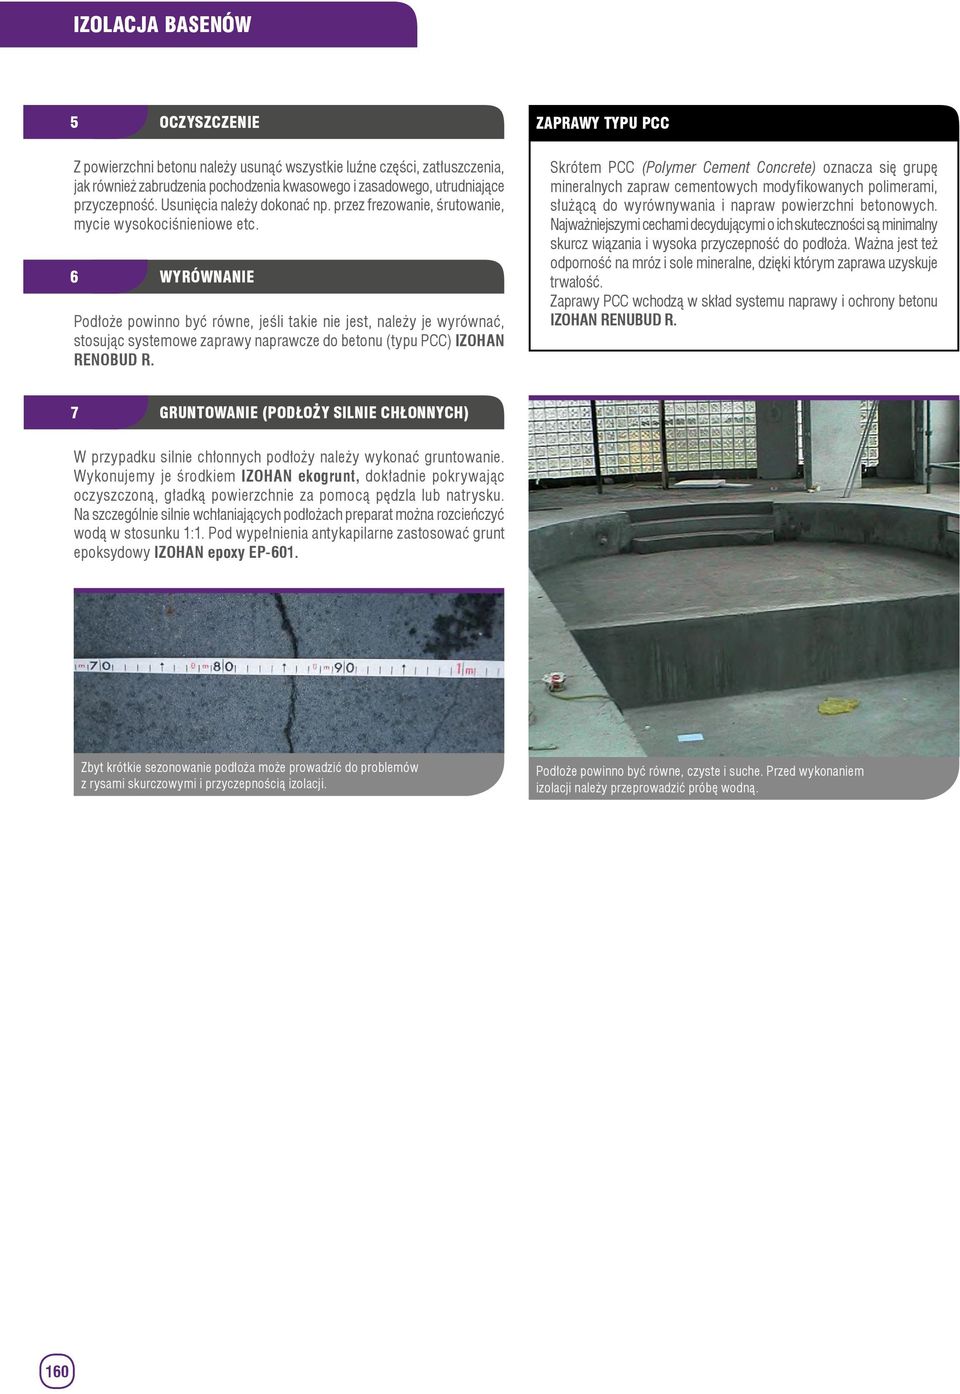 6 WYRÓWNANIE Podłoże powinno być równe, jeśli takie nie jest, należy je wyrównać, stosując systemowe zaprawy naprawcze do betonu (typu PCC) IZOHAN RENOBUD R.